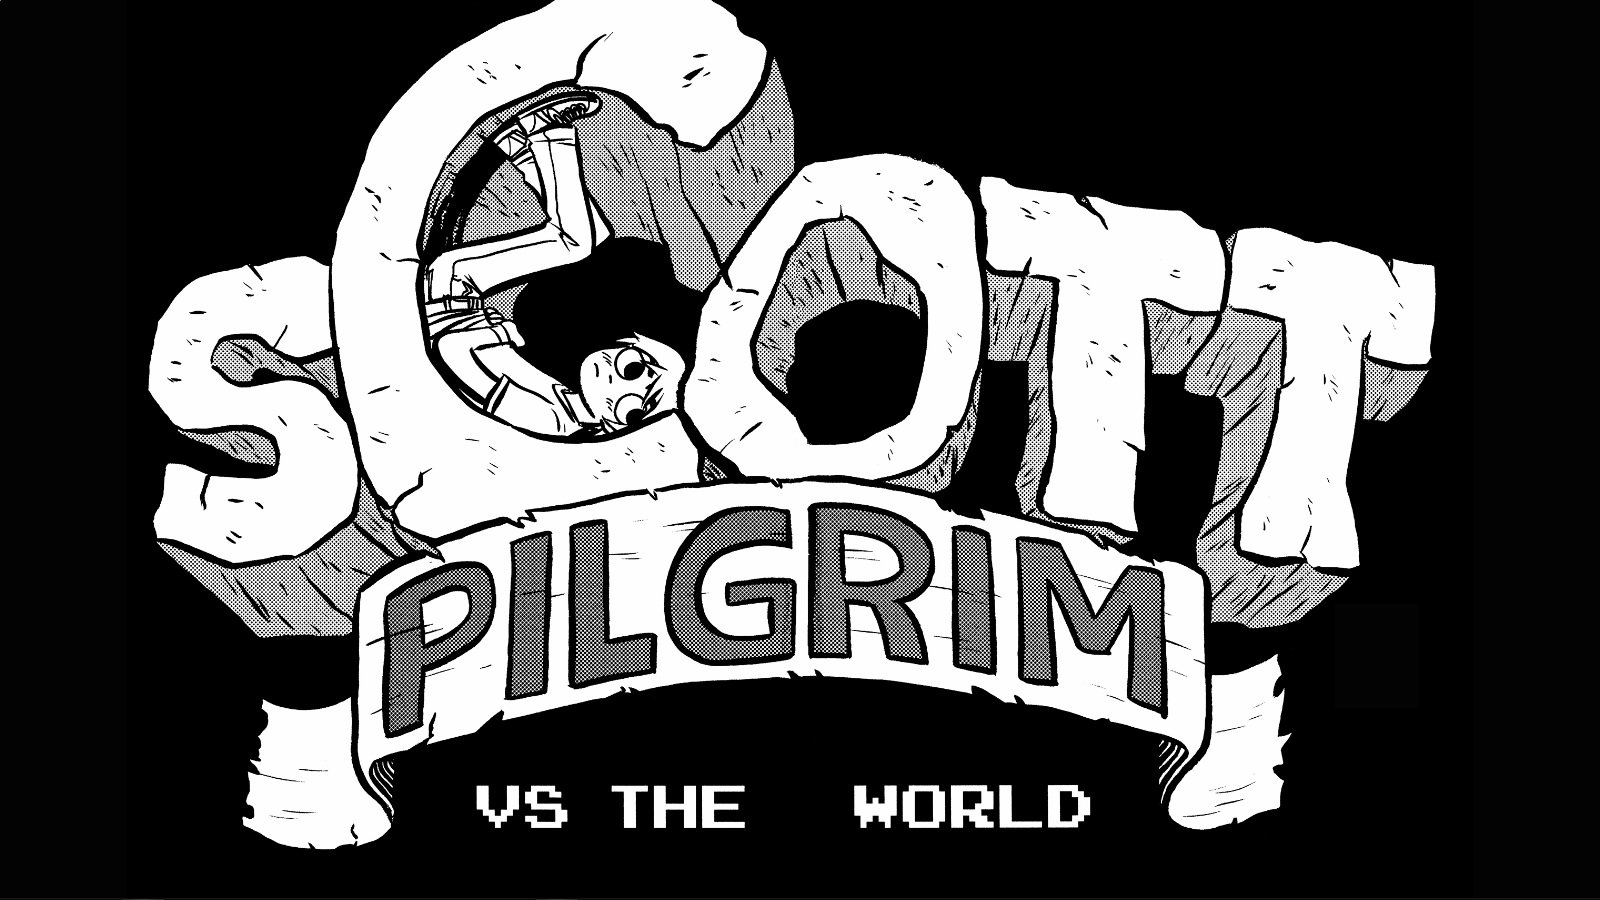 scott pilgrim vs the world pc wallpaper